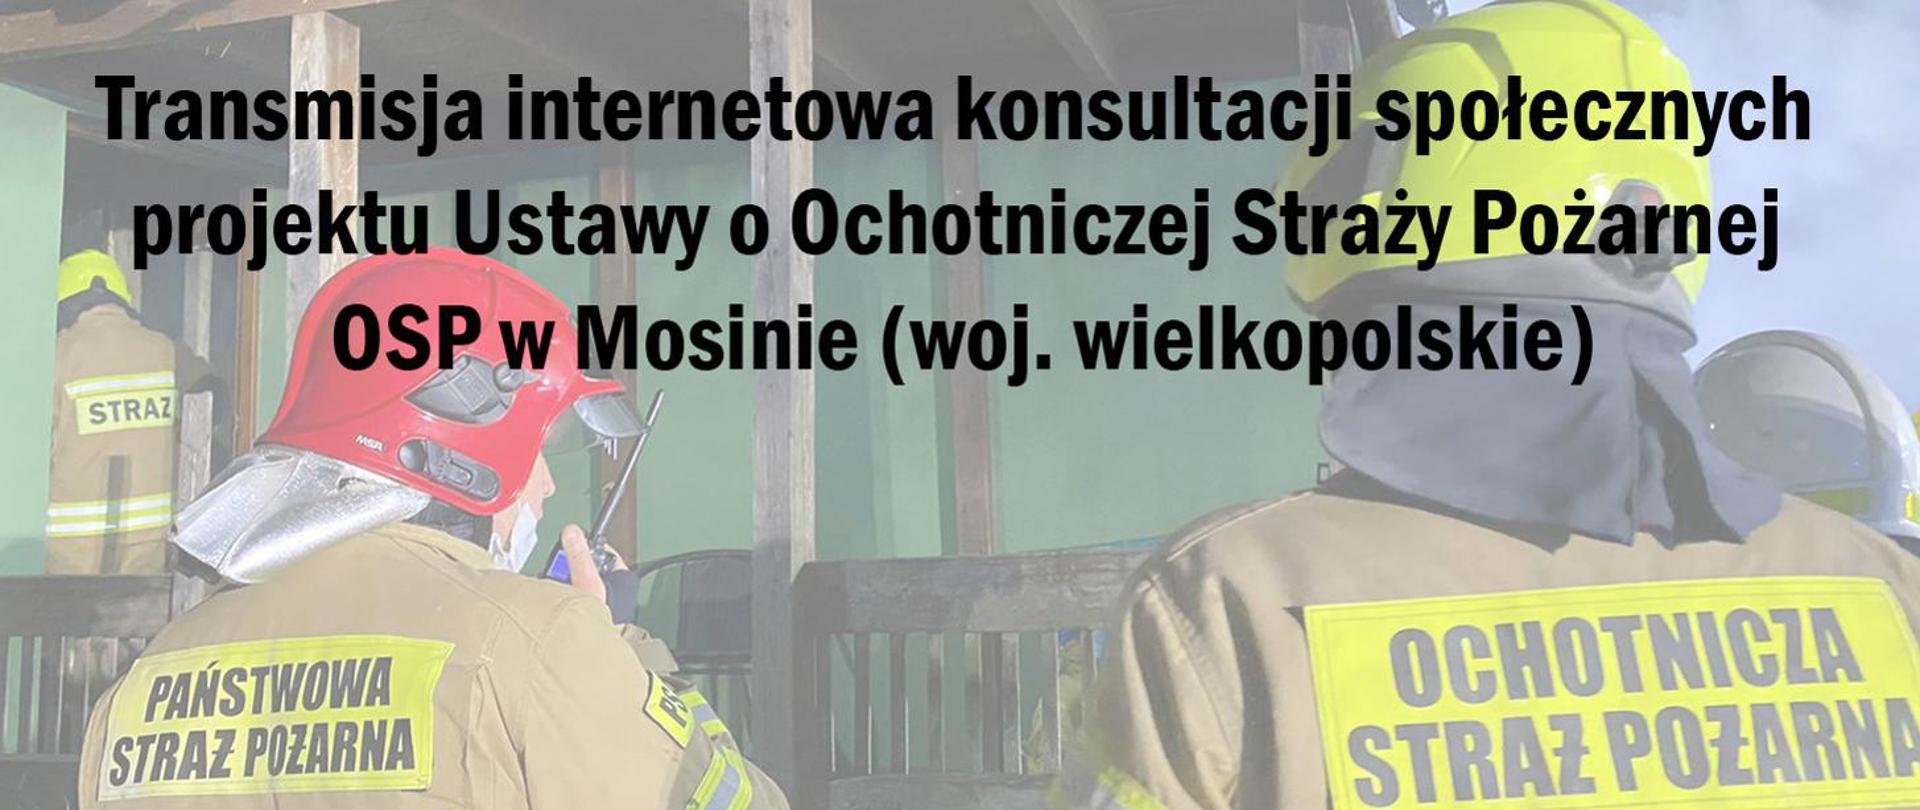 transmisja internetowa konsultacji społecznych projektu Ustawy o Ochotniczej Straży Pożarnej OSP w Mosinie